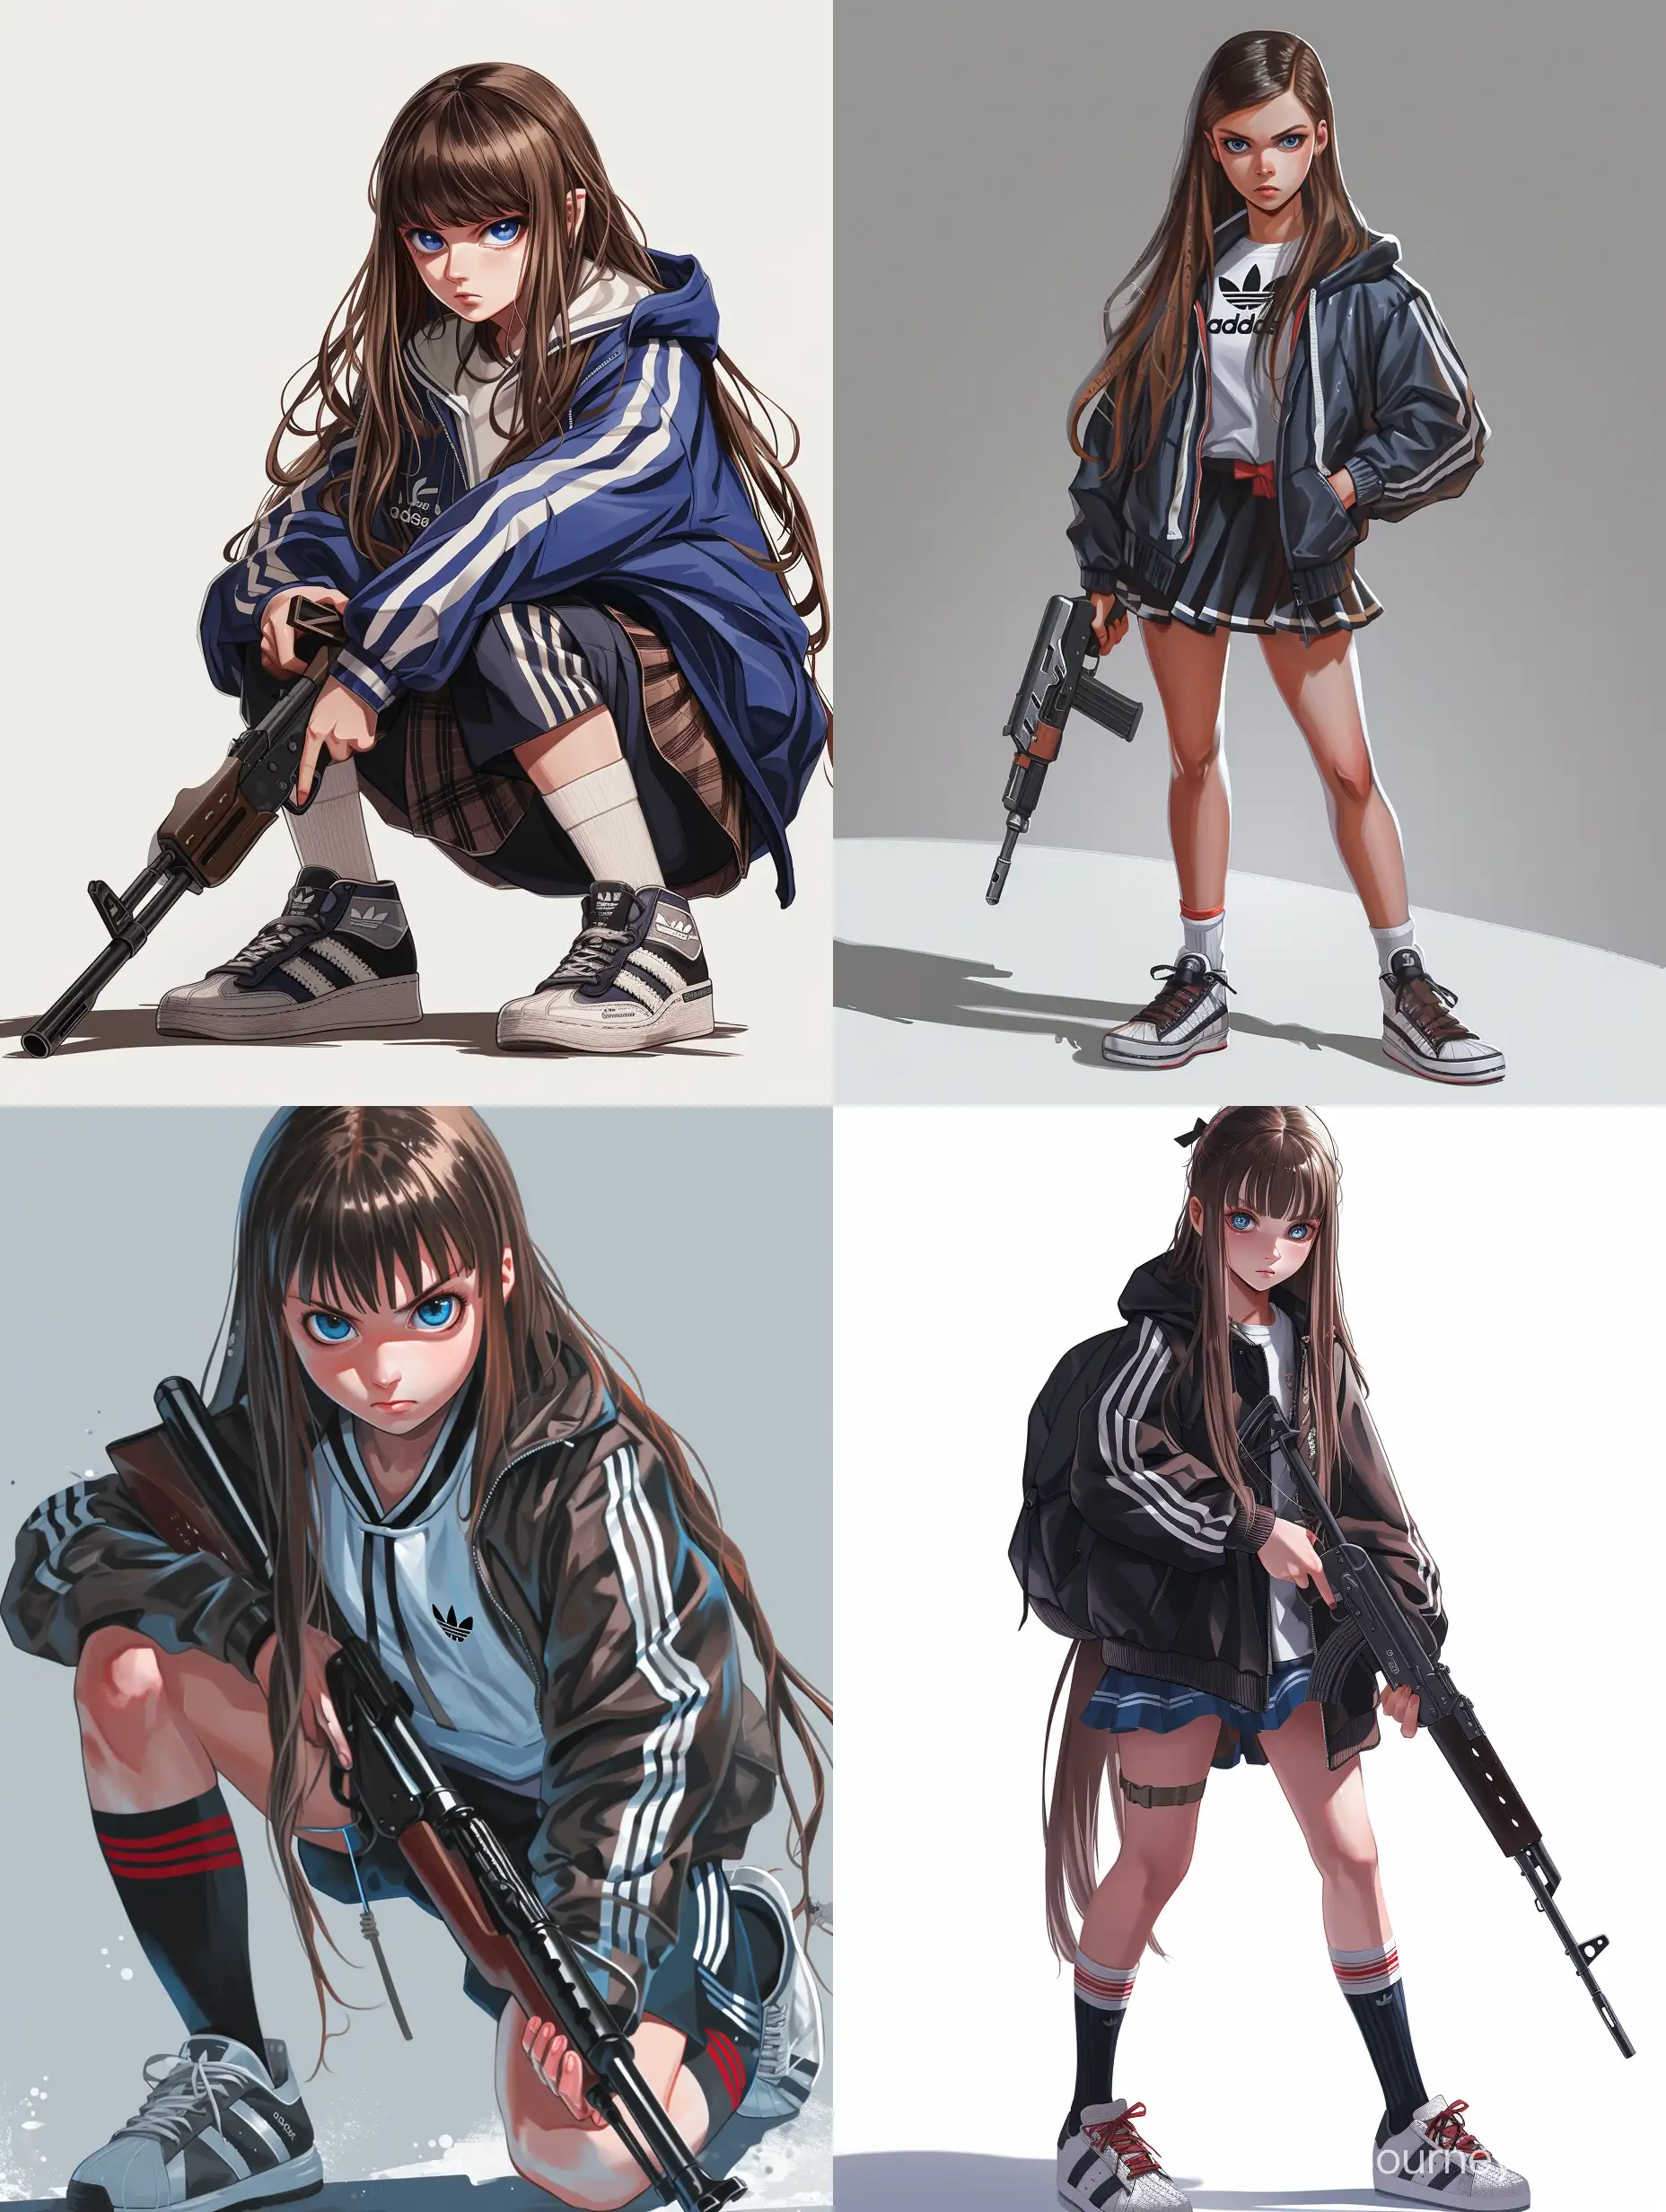 Изобрази школьницу подростка из россии в ветровке адидас и школьной форме, в высоких кедах, с длинными коричневыми волосами и голубыми глазами, с оружием в руках, в реалистичном стиле